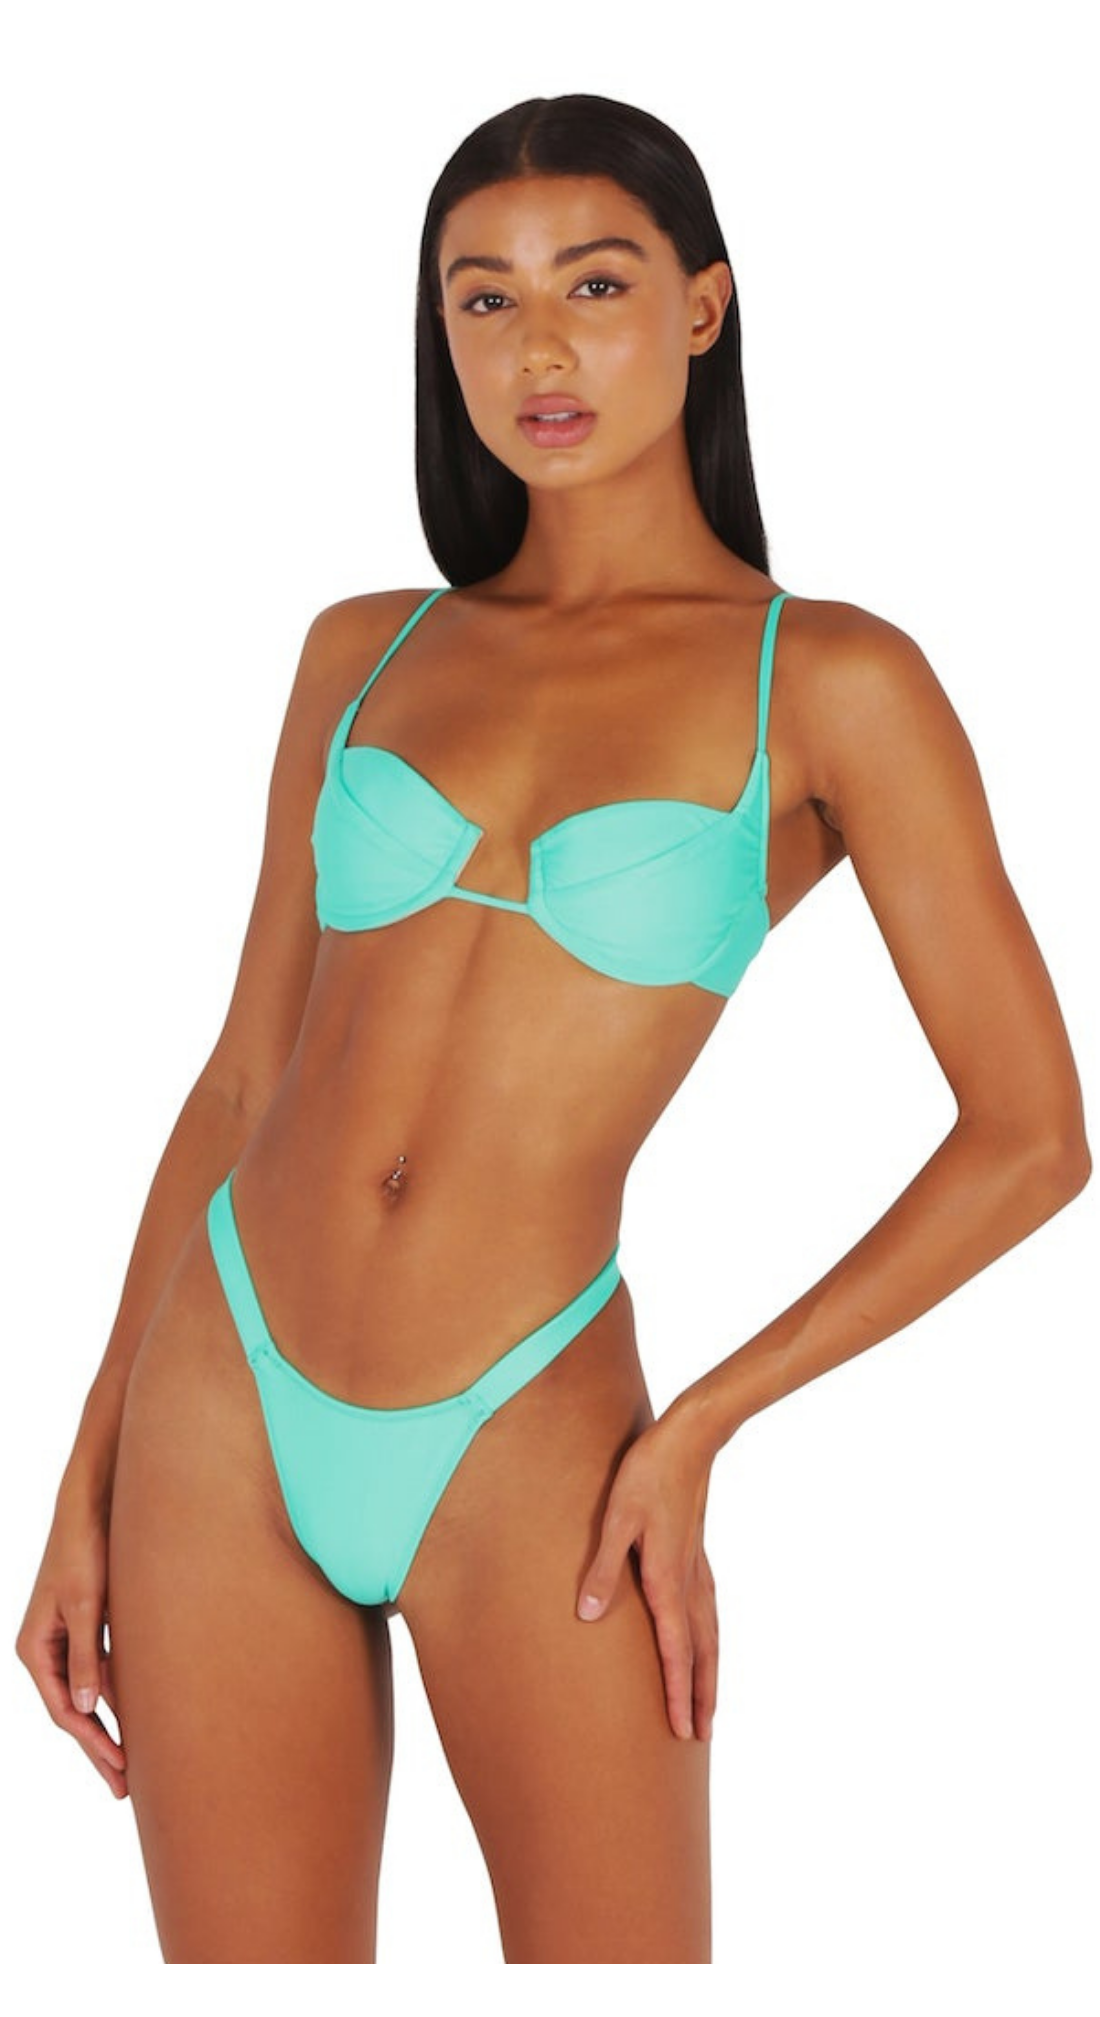 Green underwire bikini top